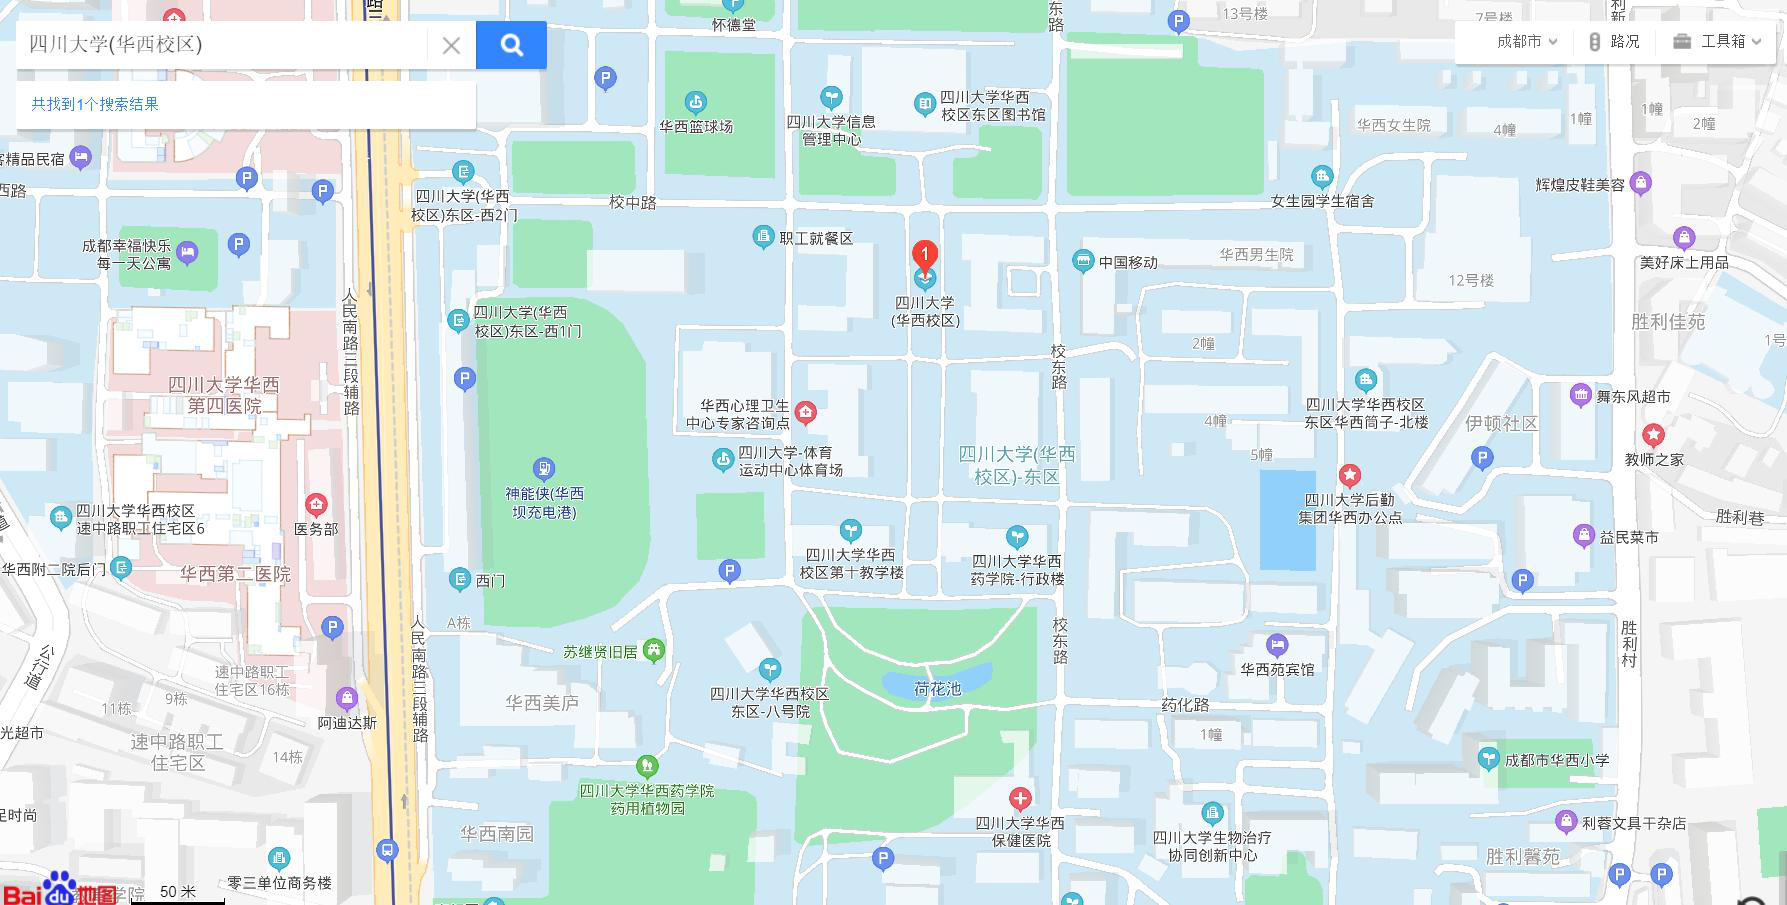 四川大学校区分布图片